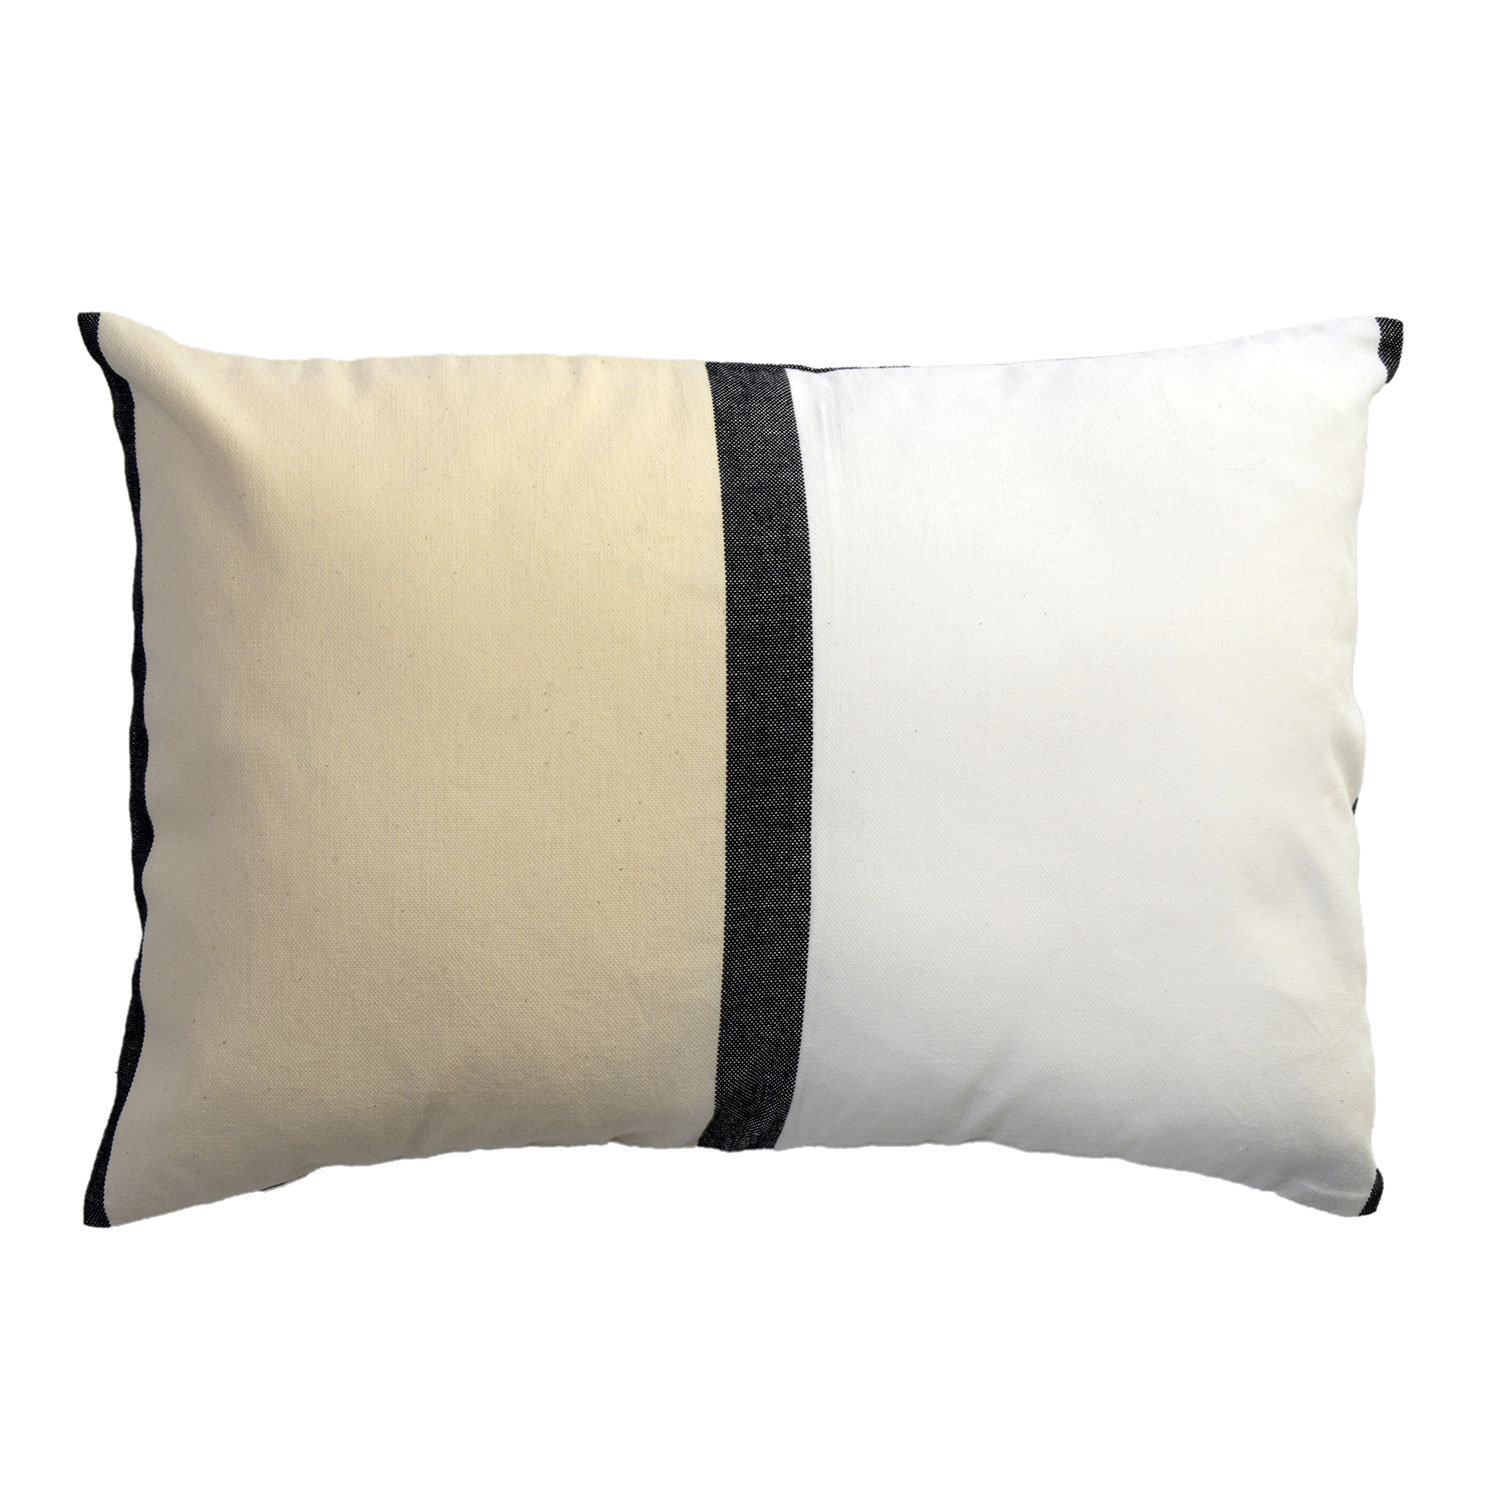 Housse de coussin coton tricolore noir blanc et écru 35 x 50